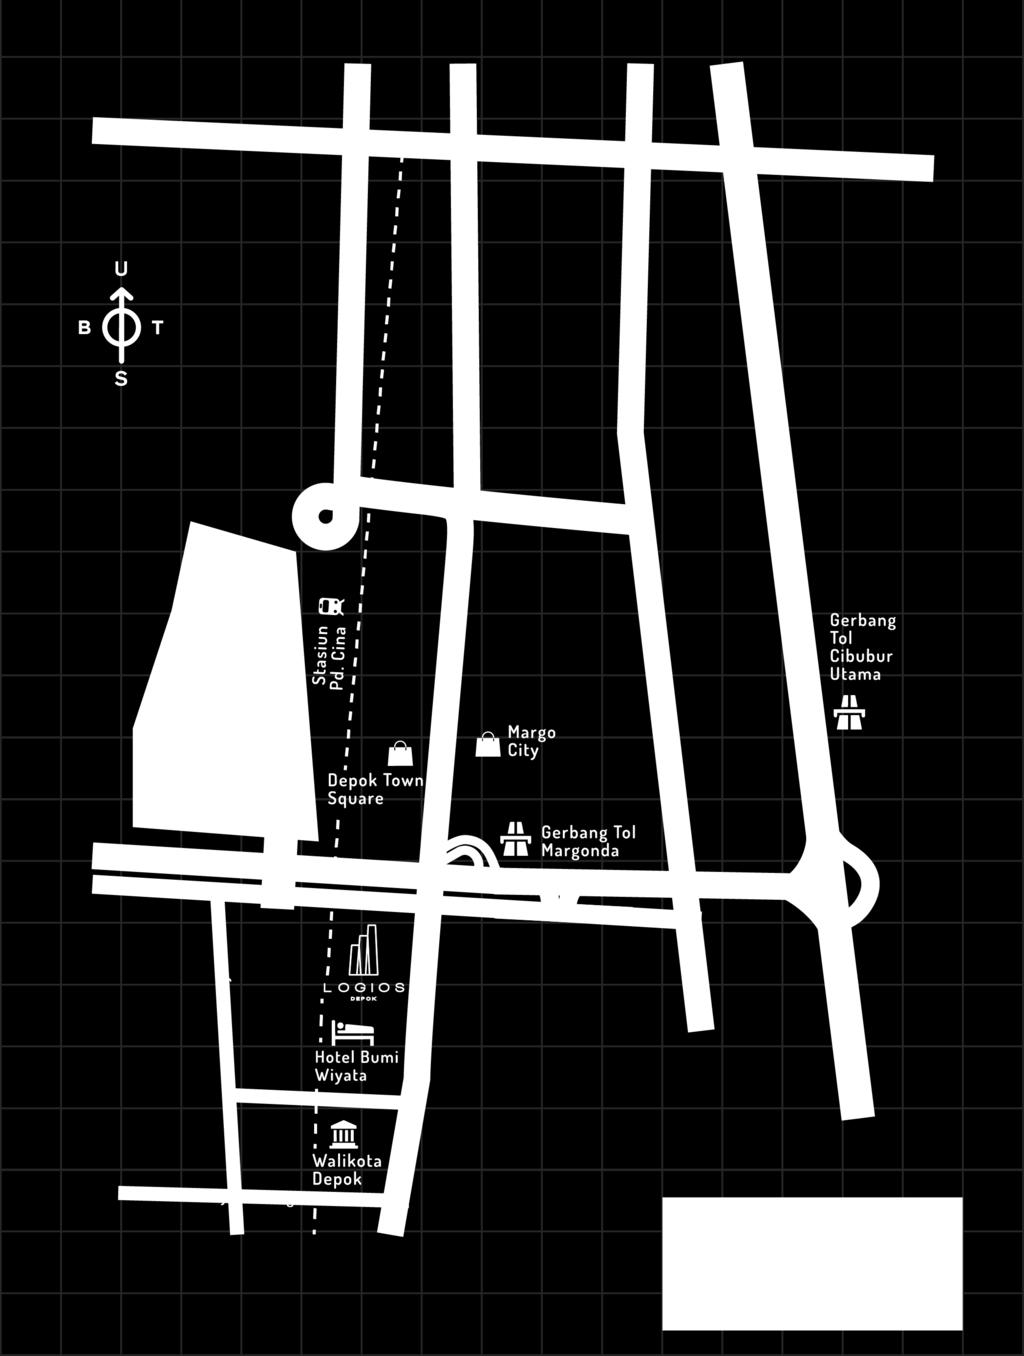 Lokasi Strategis Peta Lokasi Lokasi Strategis 5 Menit dari Depok Town Square & Margonda City Depan Gerbang Baru UI 5 menit dari Rumah Sakit UI Hunian Terpelajar 300